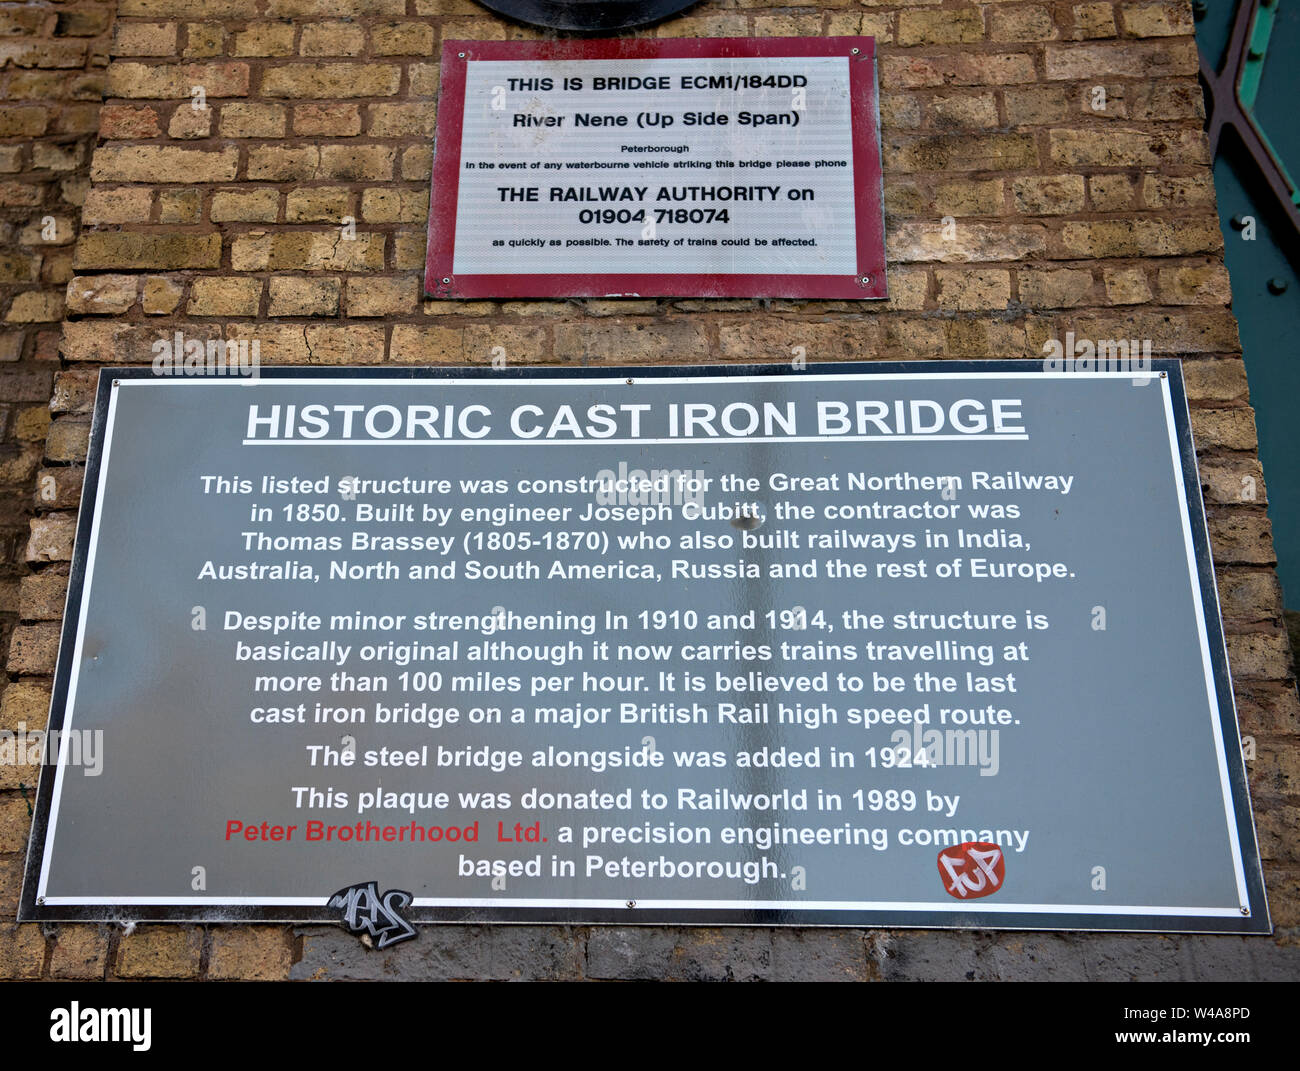 Die Plakette auf dem Ziegelstein des Nene Viaduct, die behauptet, dass die Brücke das letzte erhaltene Gusseisenbauwerk an einer Hauptbahnstrecke in Großbritannien ist Stockfoto